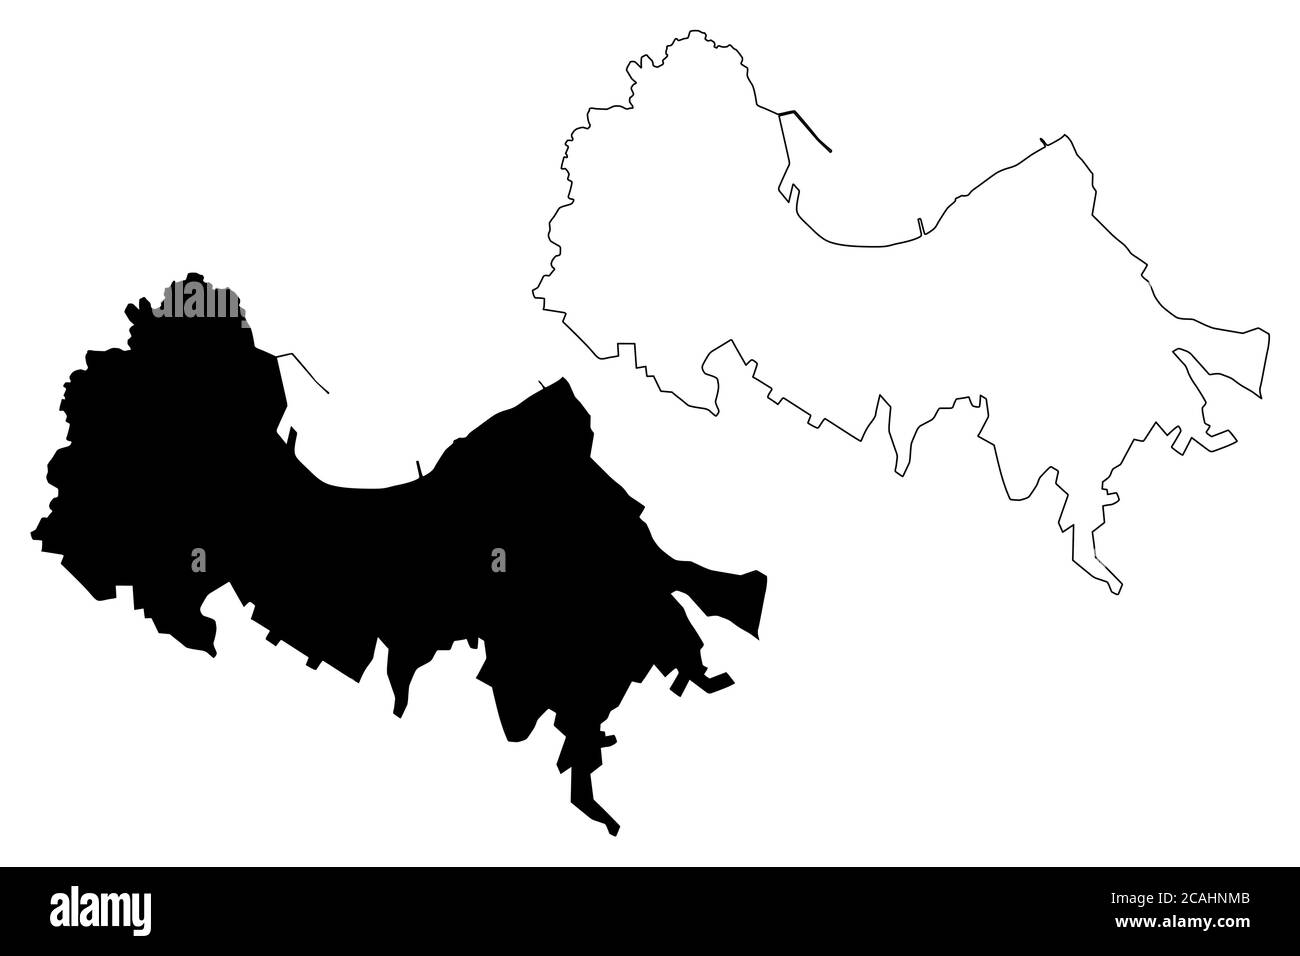 Ville de Valparaiso (République du Chili, région de Valparaiso) carte illustration vectorielle, scribing sketch carte de la ville de Valparaiso Illustration de Vecteur